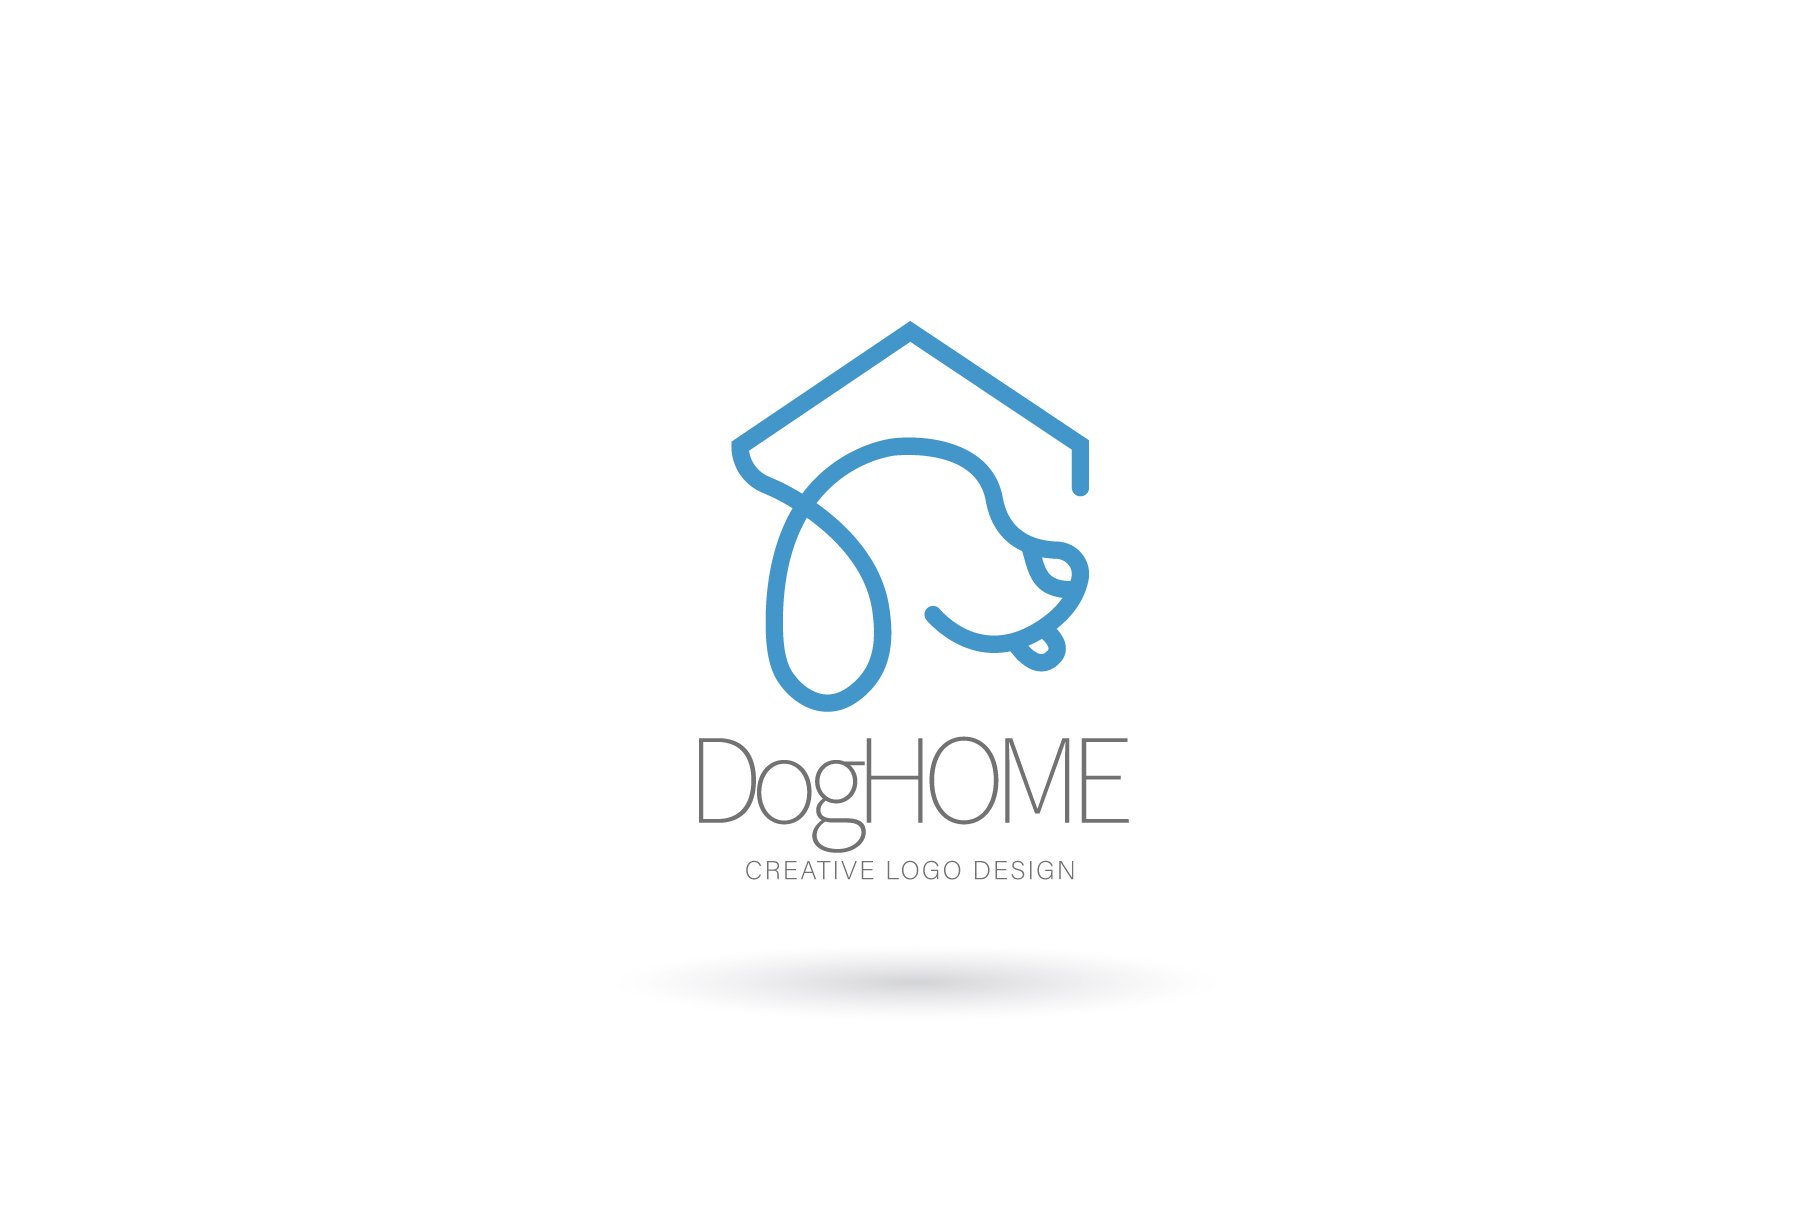 Dog home logo, Pet house logo cover image.